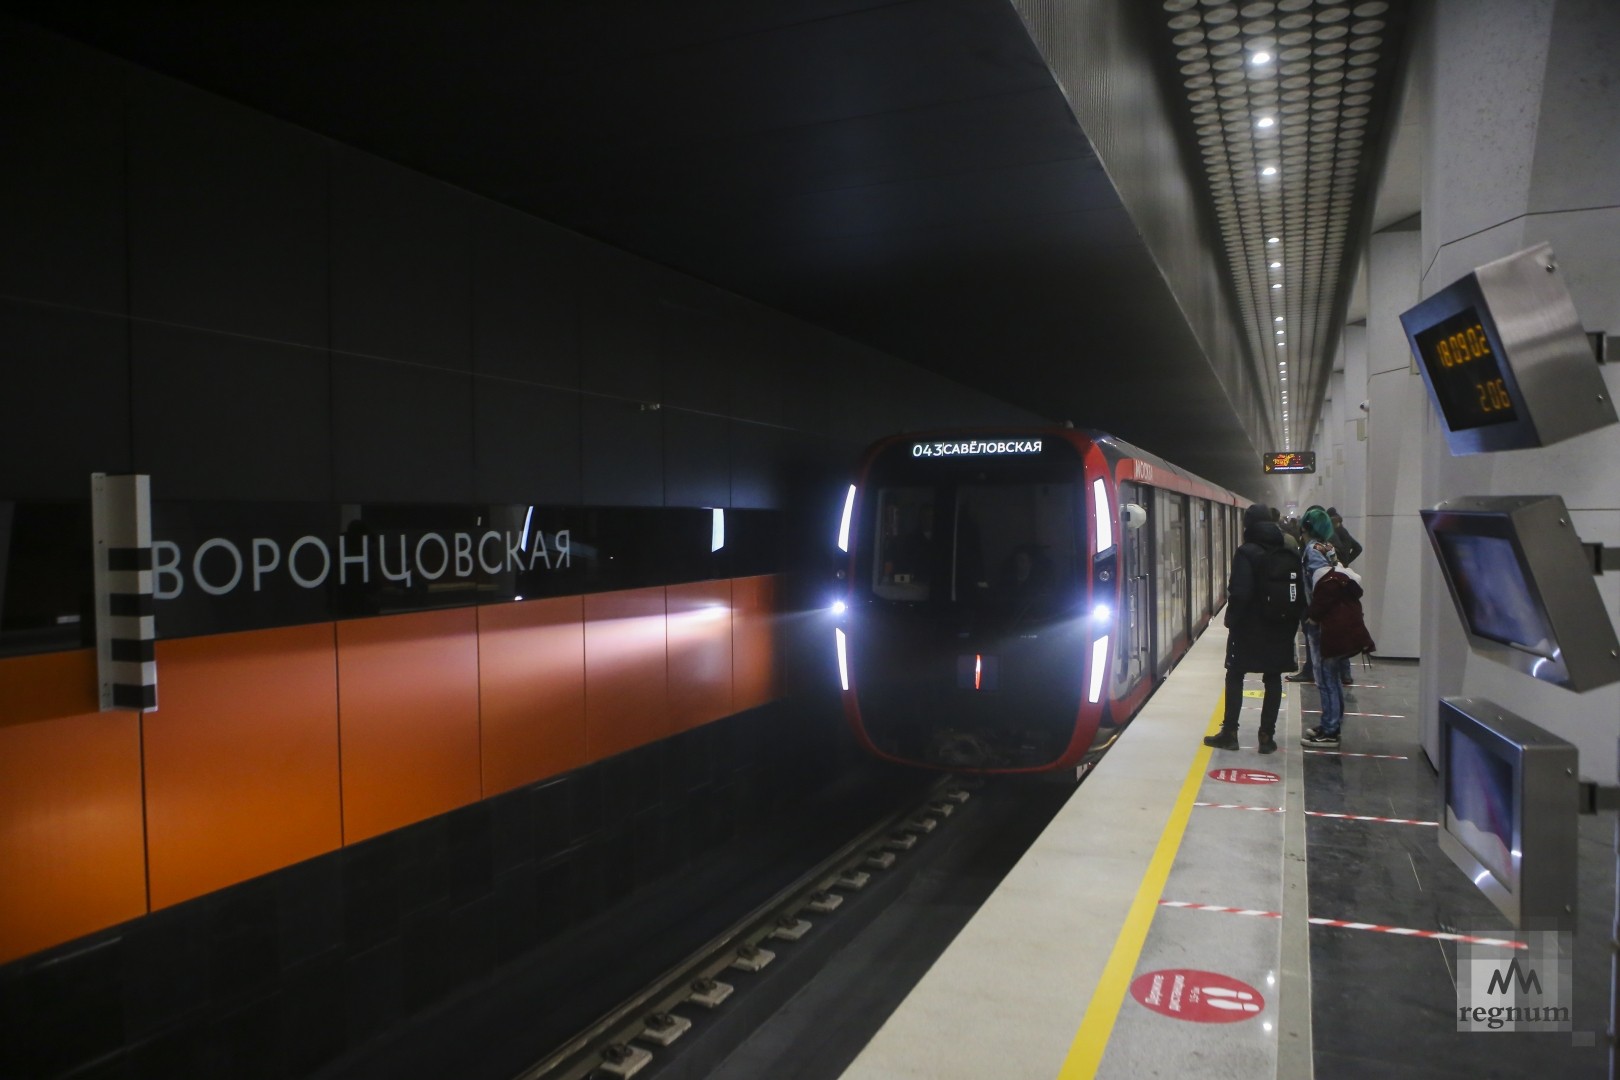 Станция воронцовская фото